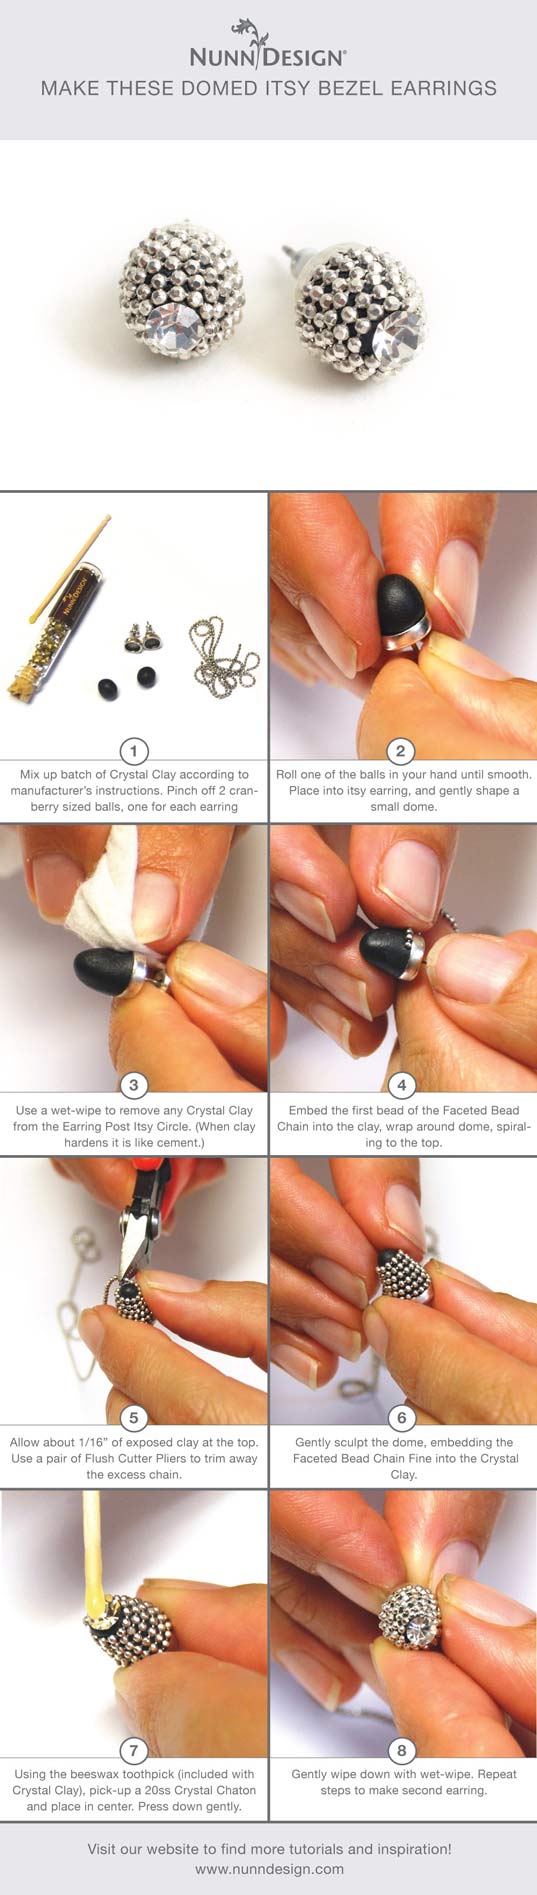 Pinterest-Cheatsheet-domed-itsy-bezel-earrings-tutorial-proof-537